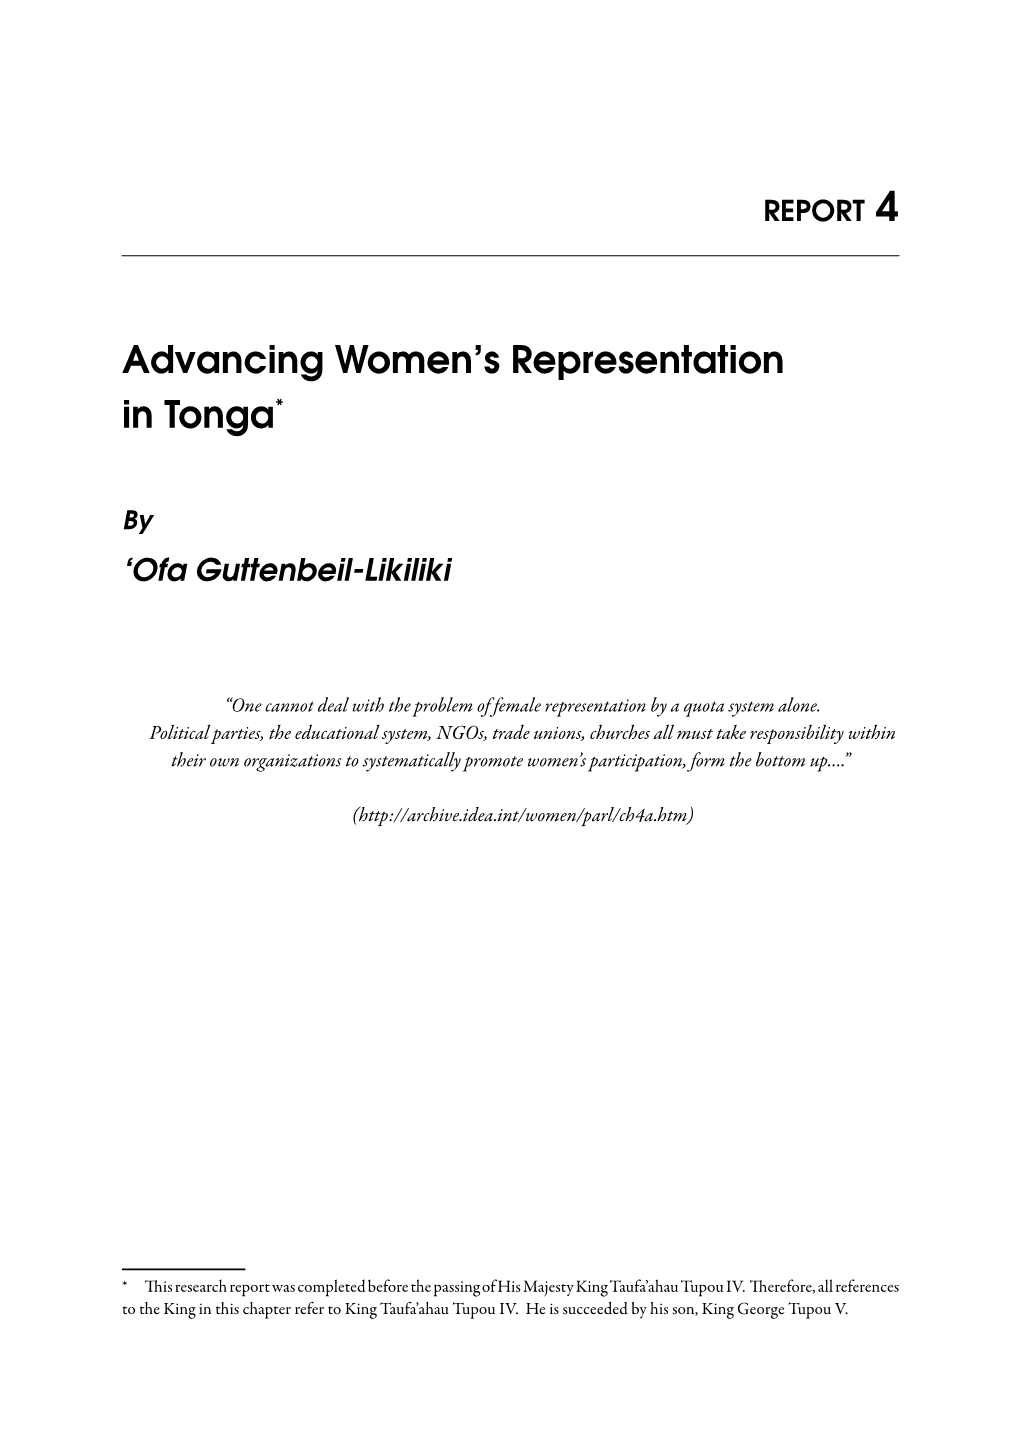 Advancing Women's Representation in Tonga